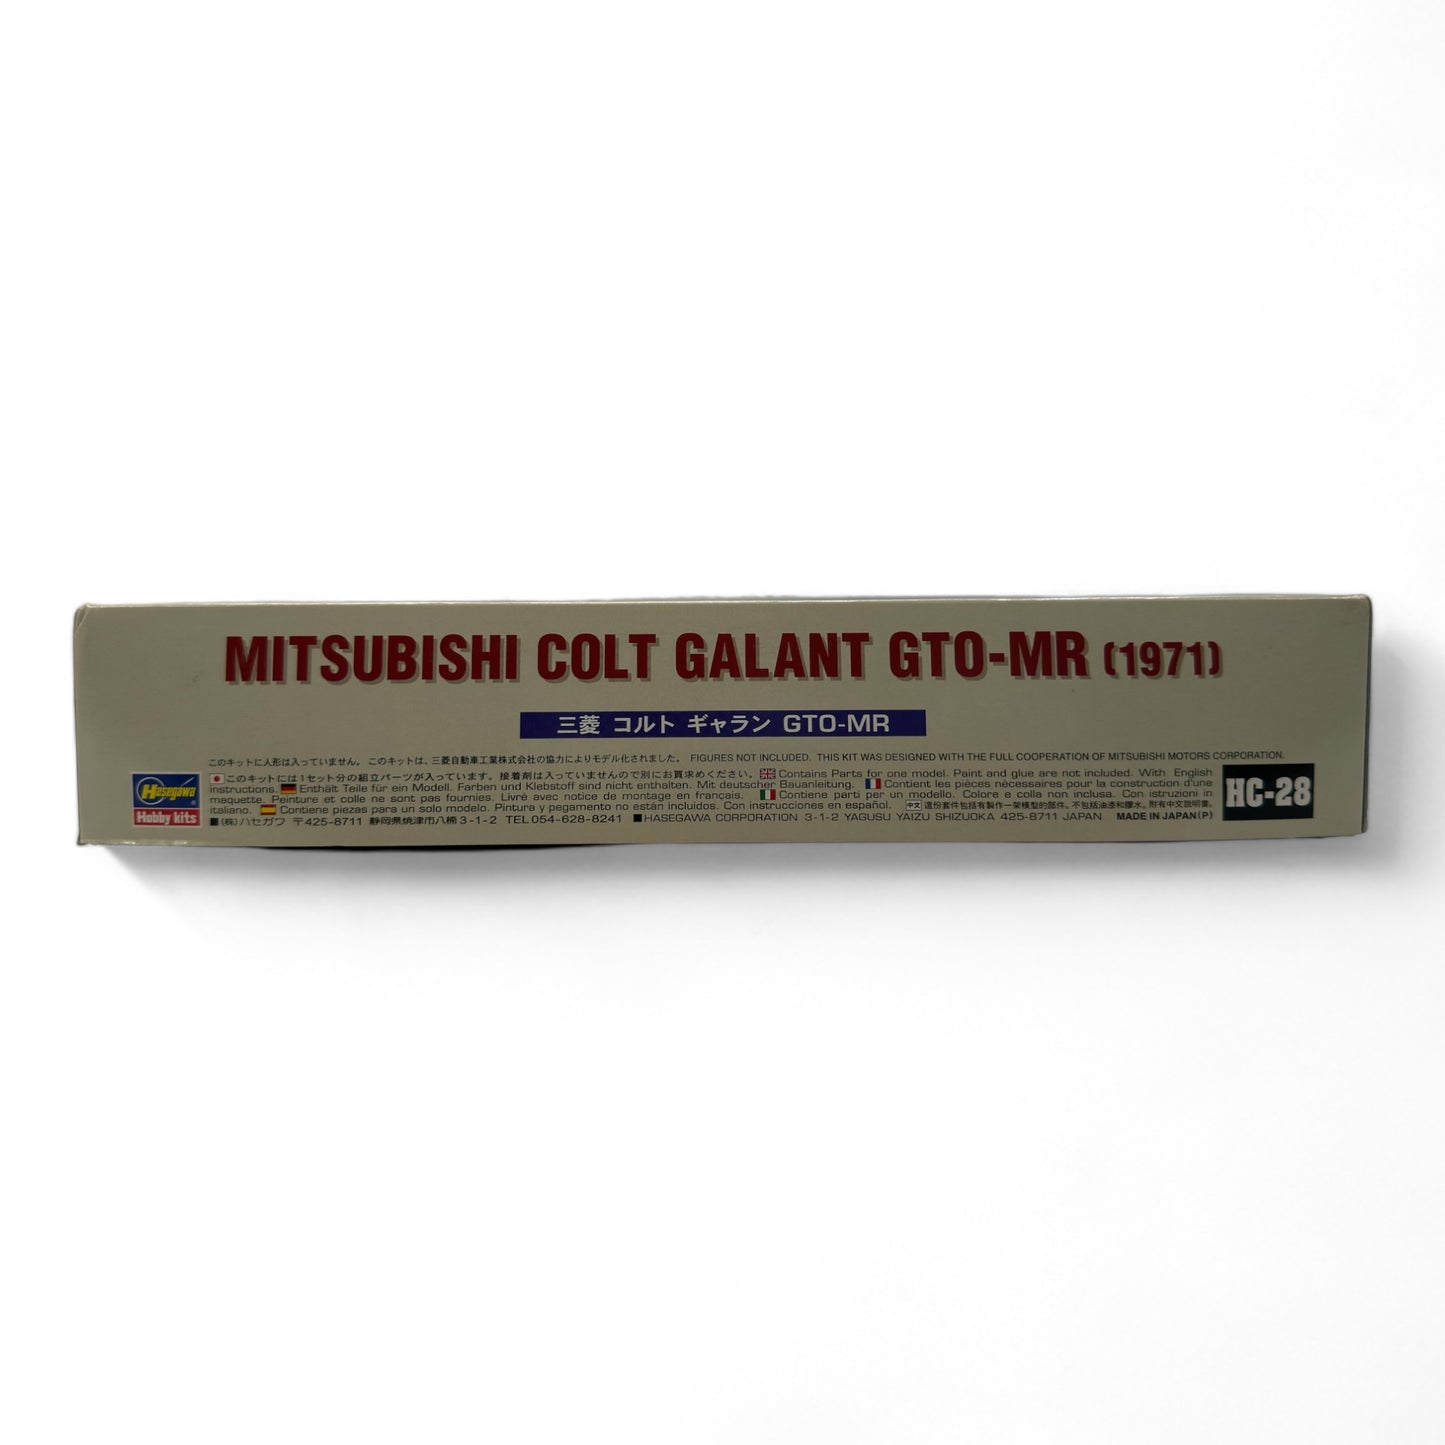 Mitsubishi Colt Galant GTO-MR (1971) 1:24 - Hasegawa